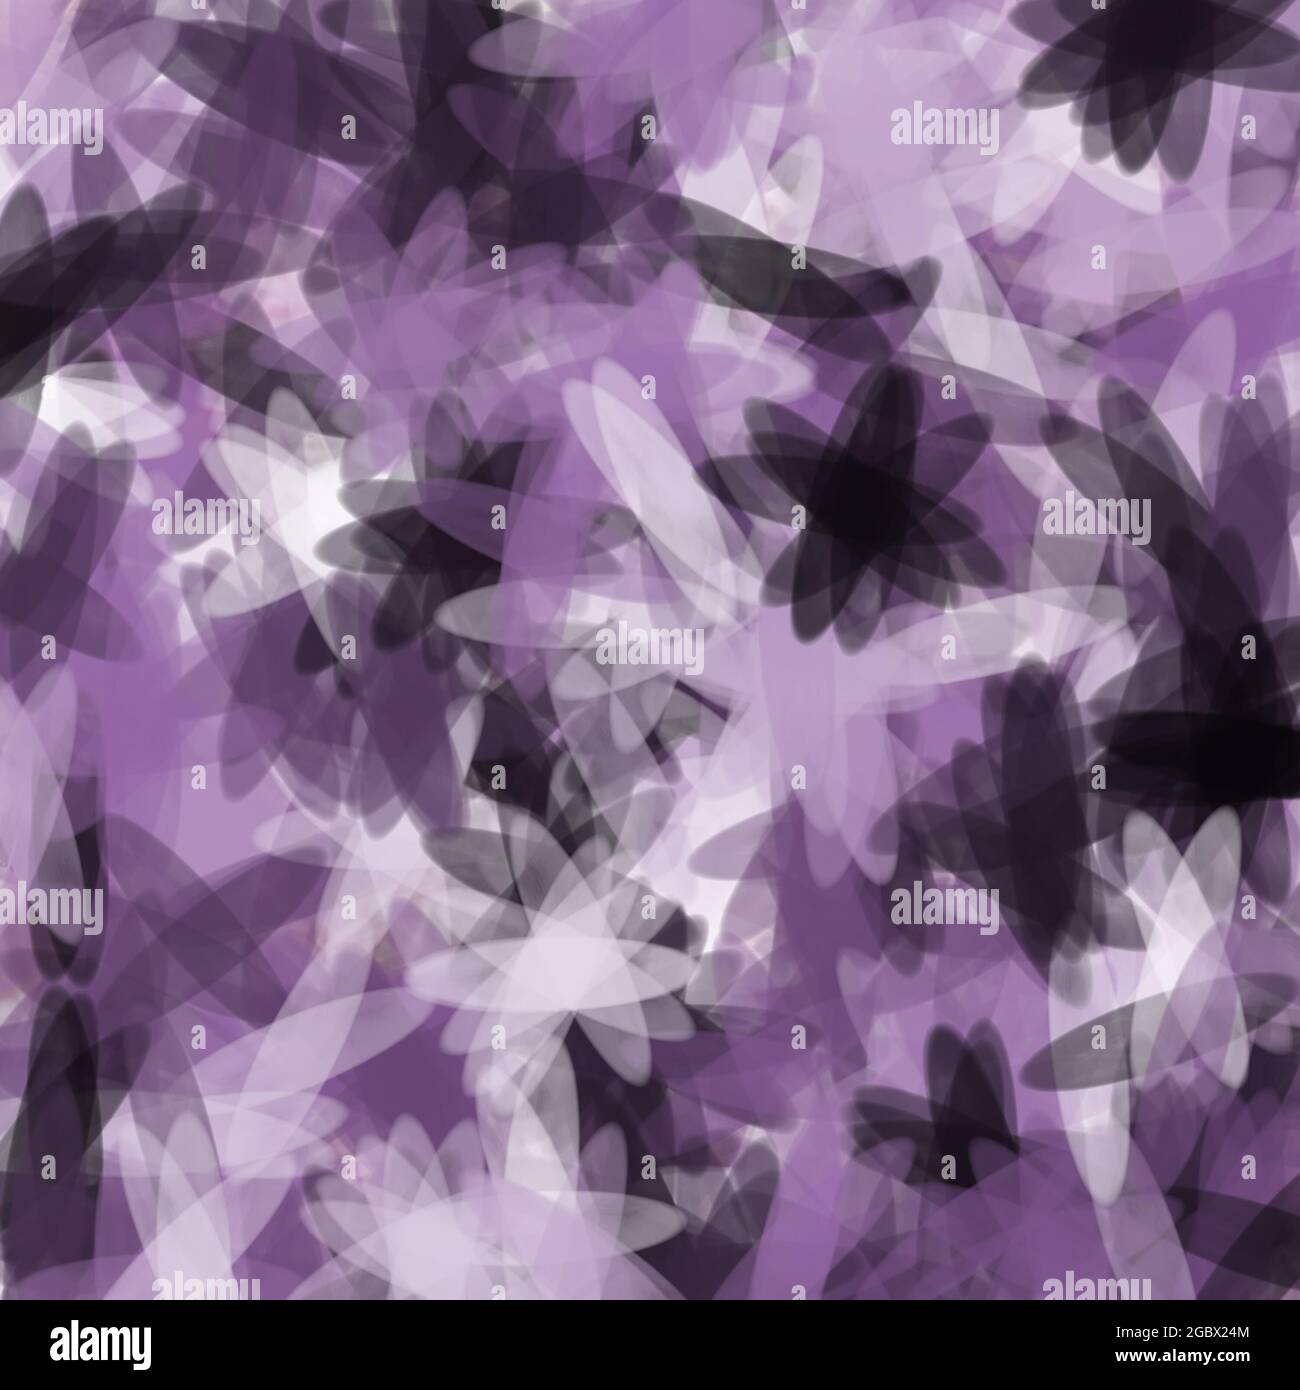 Abstrakter Blumenhintergrund. Violette Farbtöne. Ovale Formen, zufällige Platzierung. Stockfoto